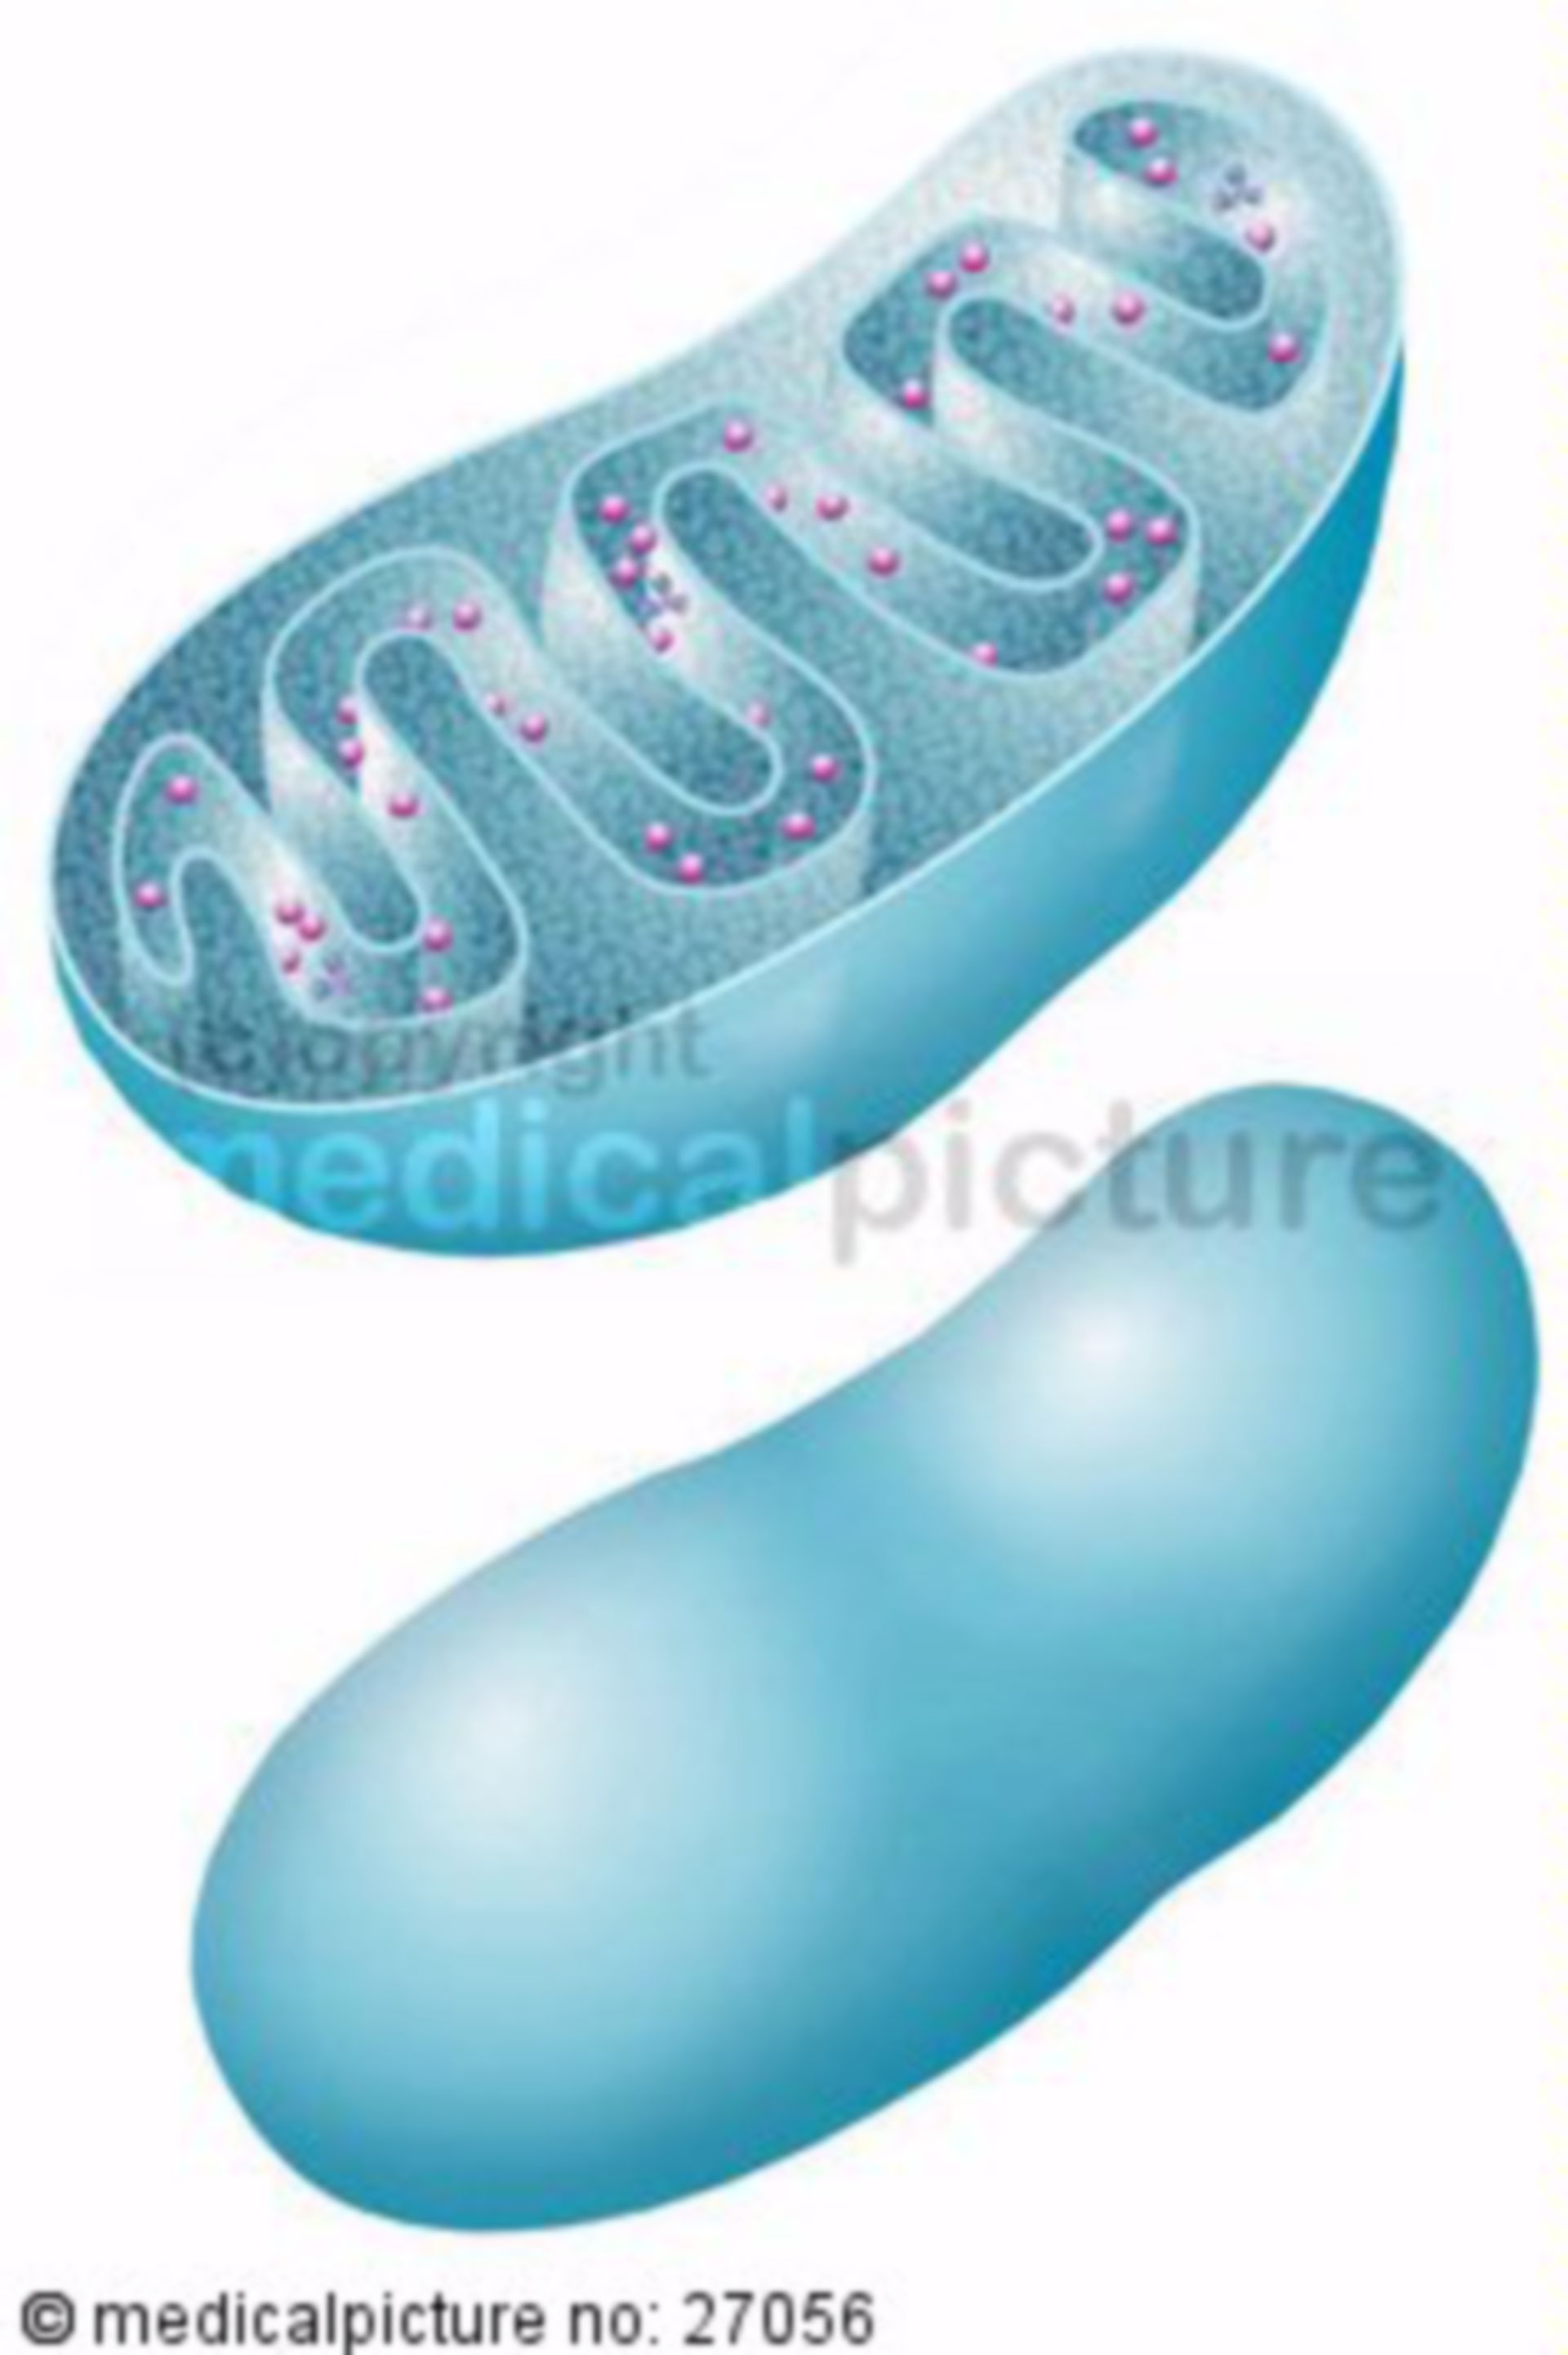 Mitochondrien, mitochondria